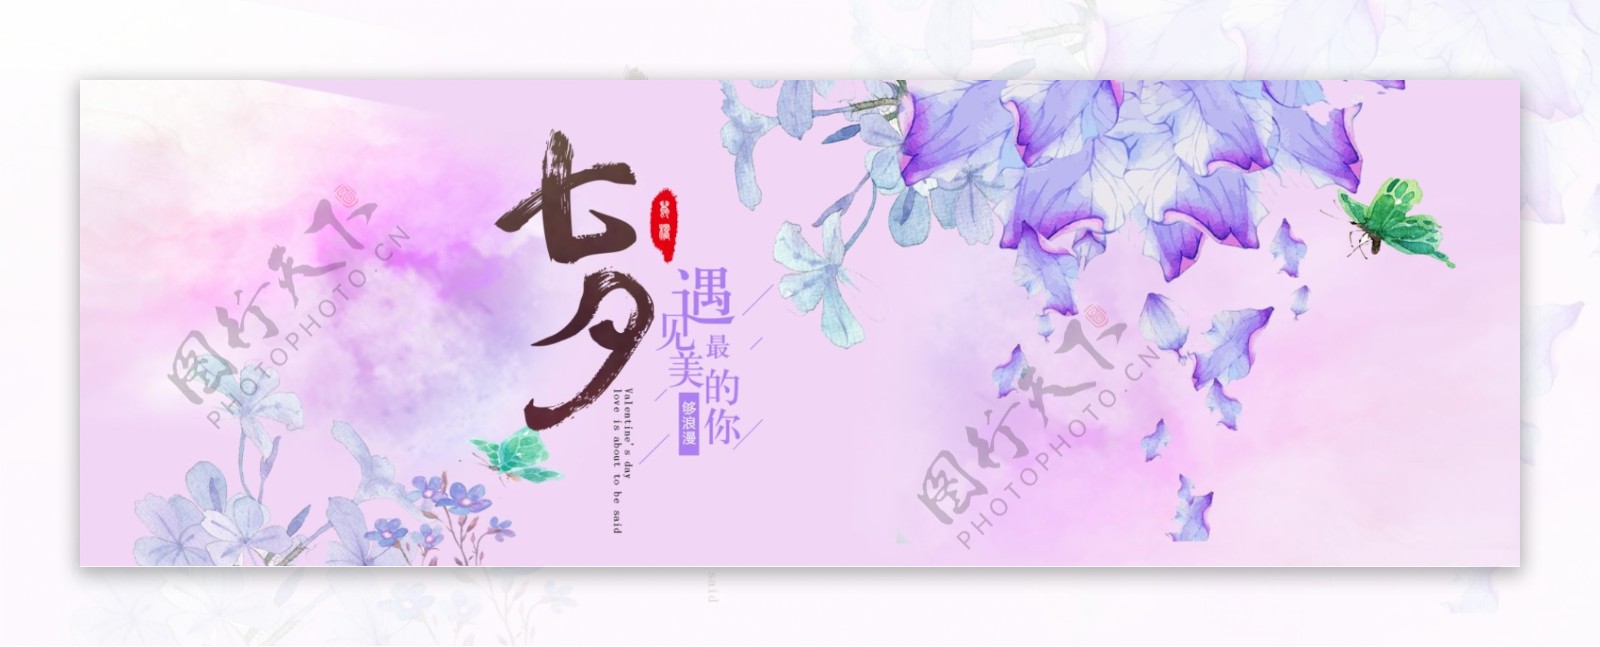 淘宝天猫电商七夕情人节浪漫恋爱模板海报banner设计手绘紫色